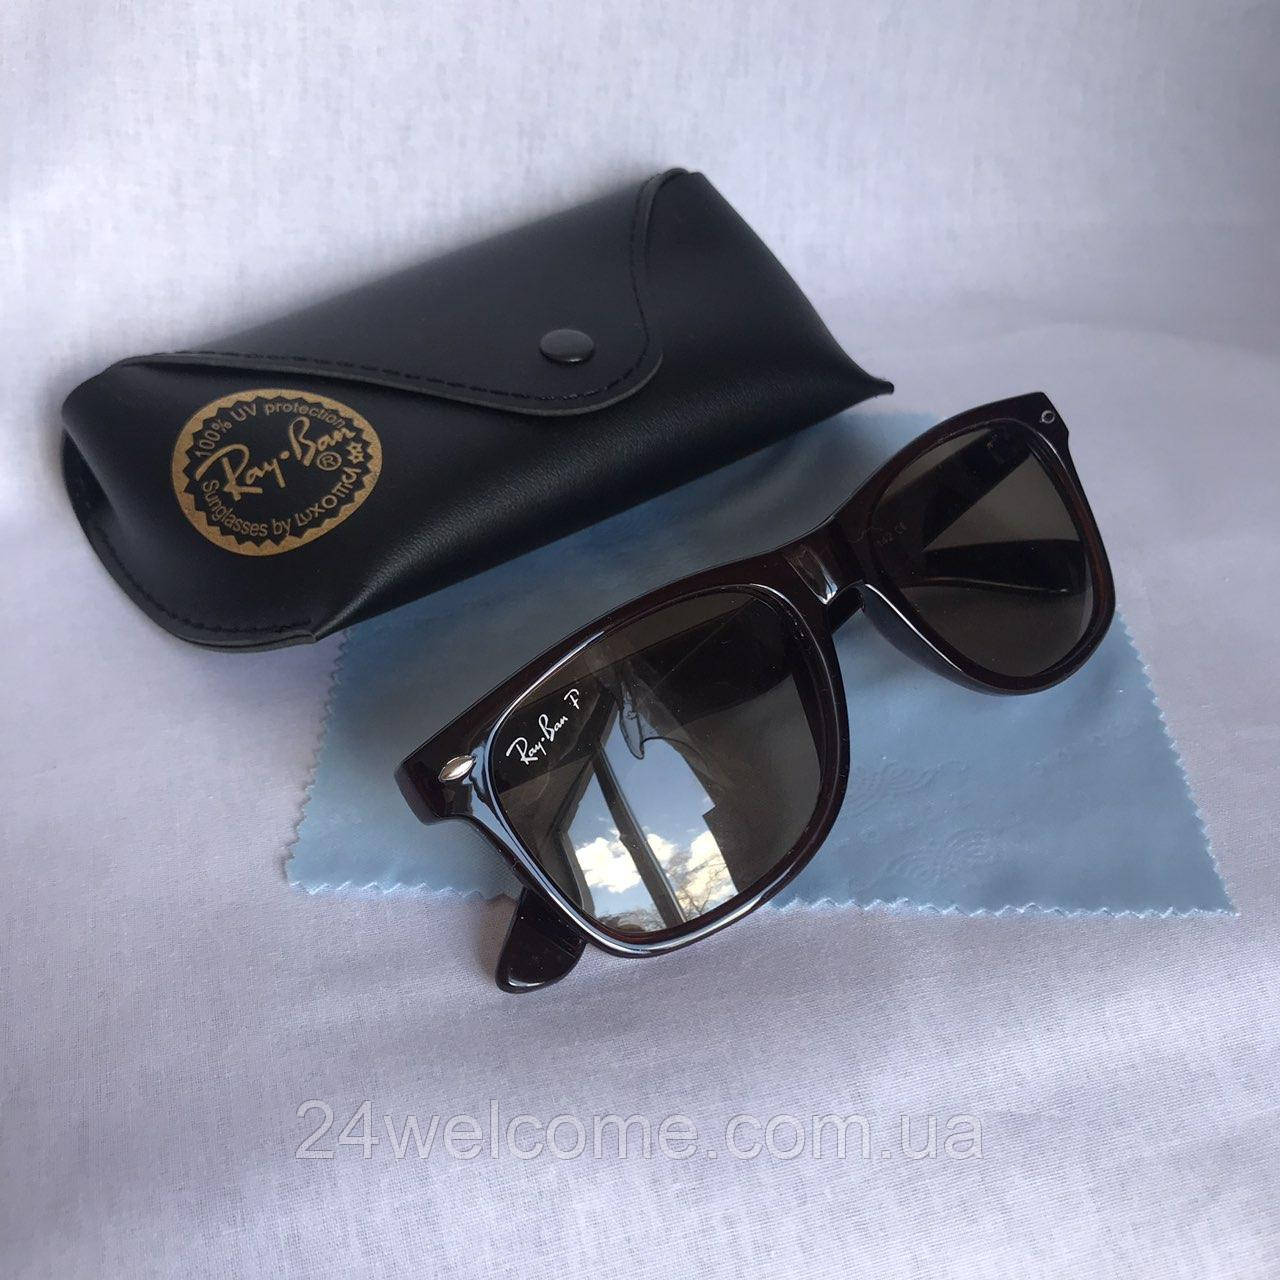 Сонцезахисні окуляри унісекс Ray Ban Wayfarer скло коричневий комплект